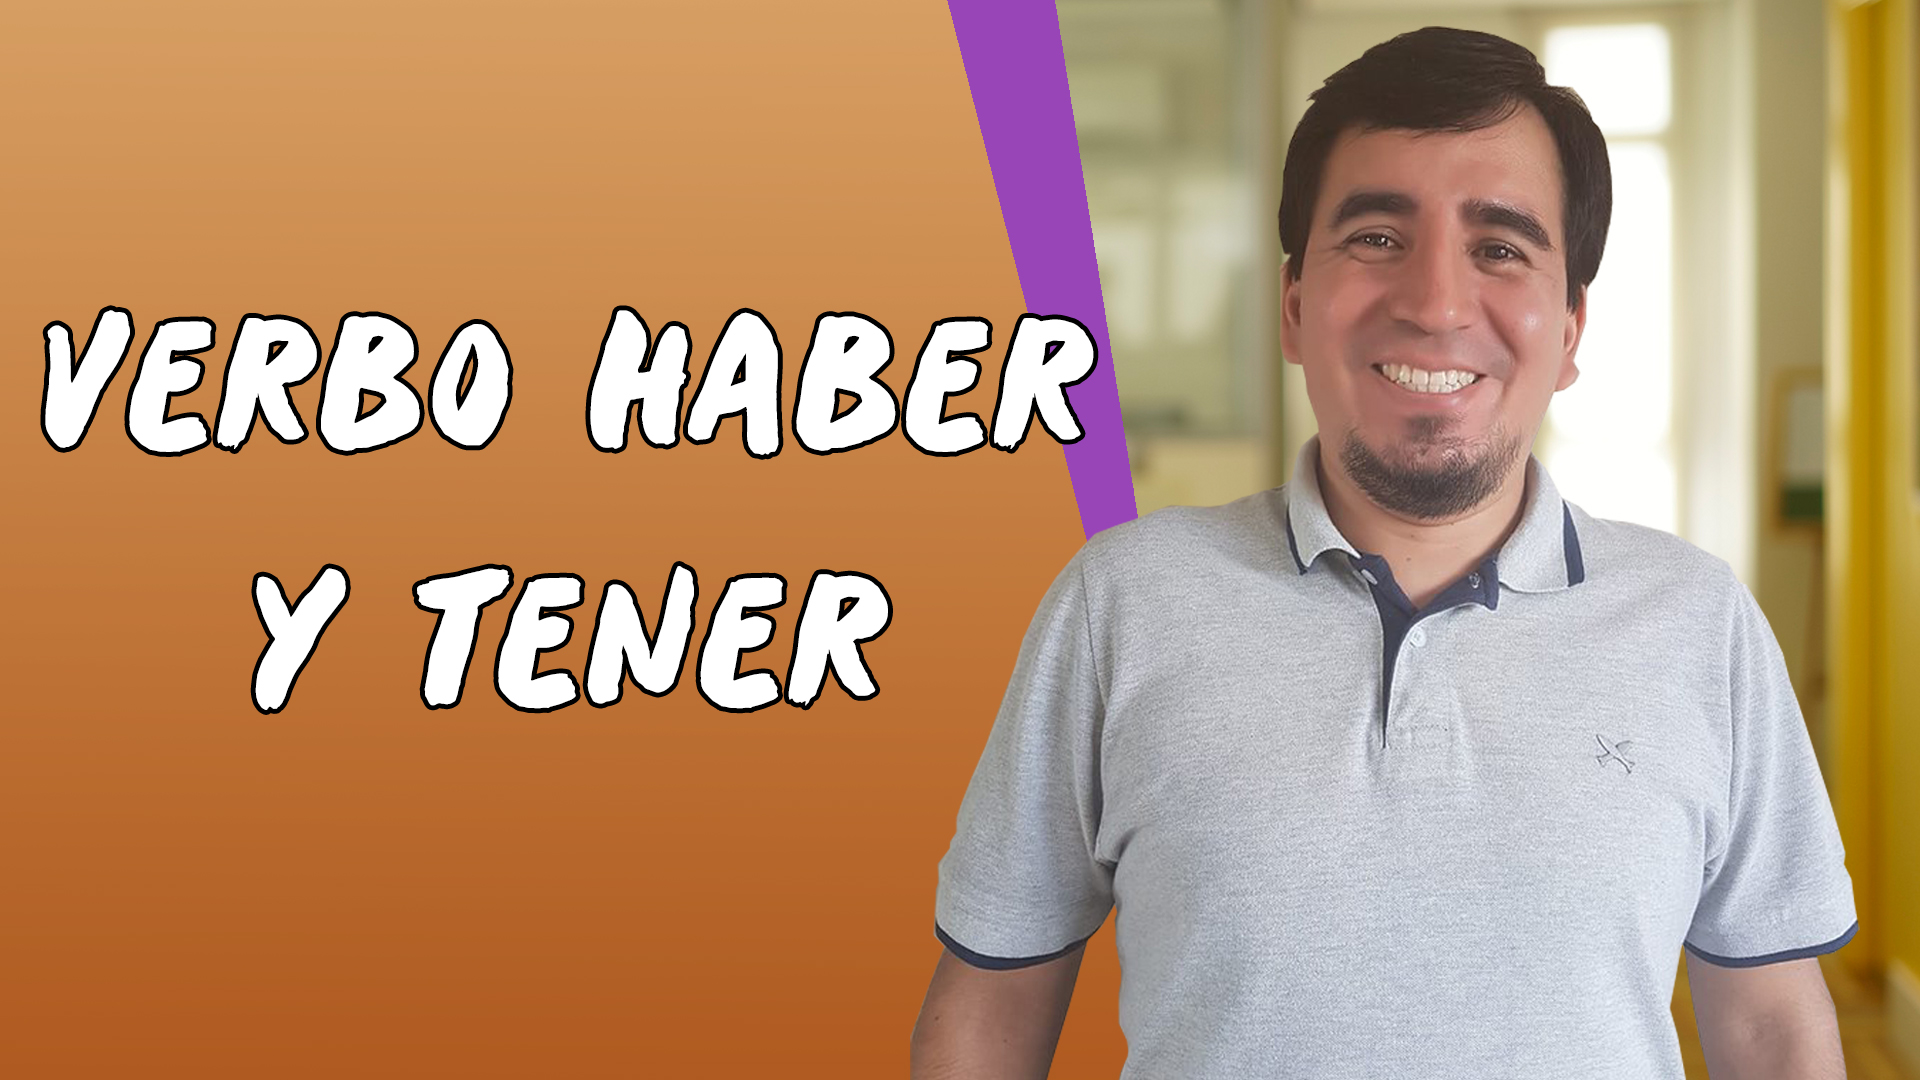 "Verbo Haber y Tener" escrito sobre fundo laranja ao lado da imagem do professor